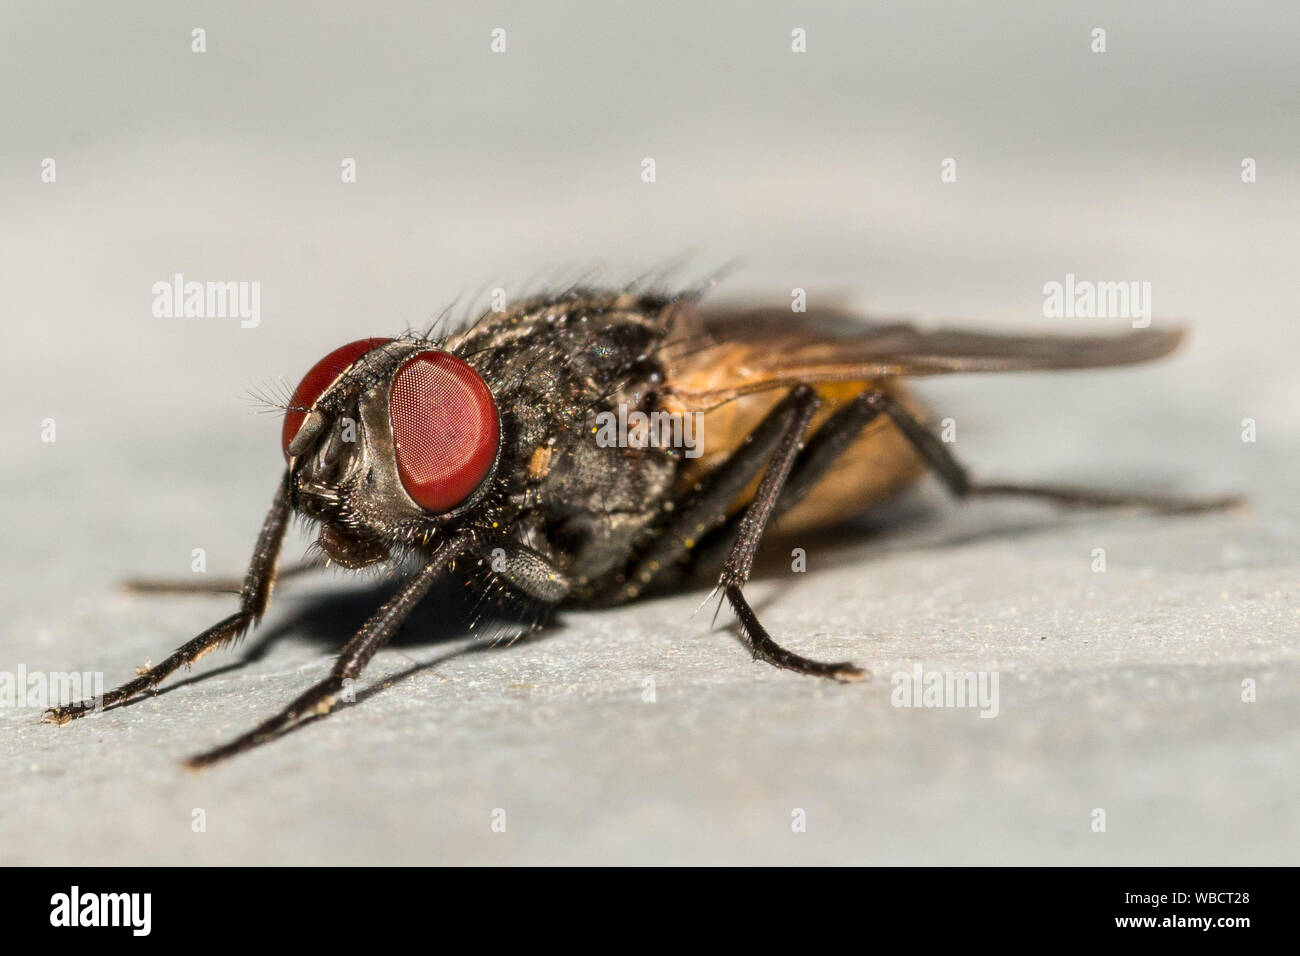 Fliege Facettenauge Makro / Fly compound eye macro Stock Photo